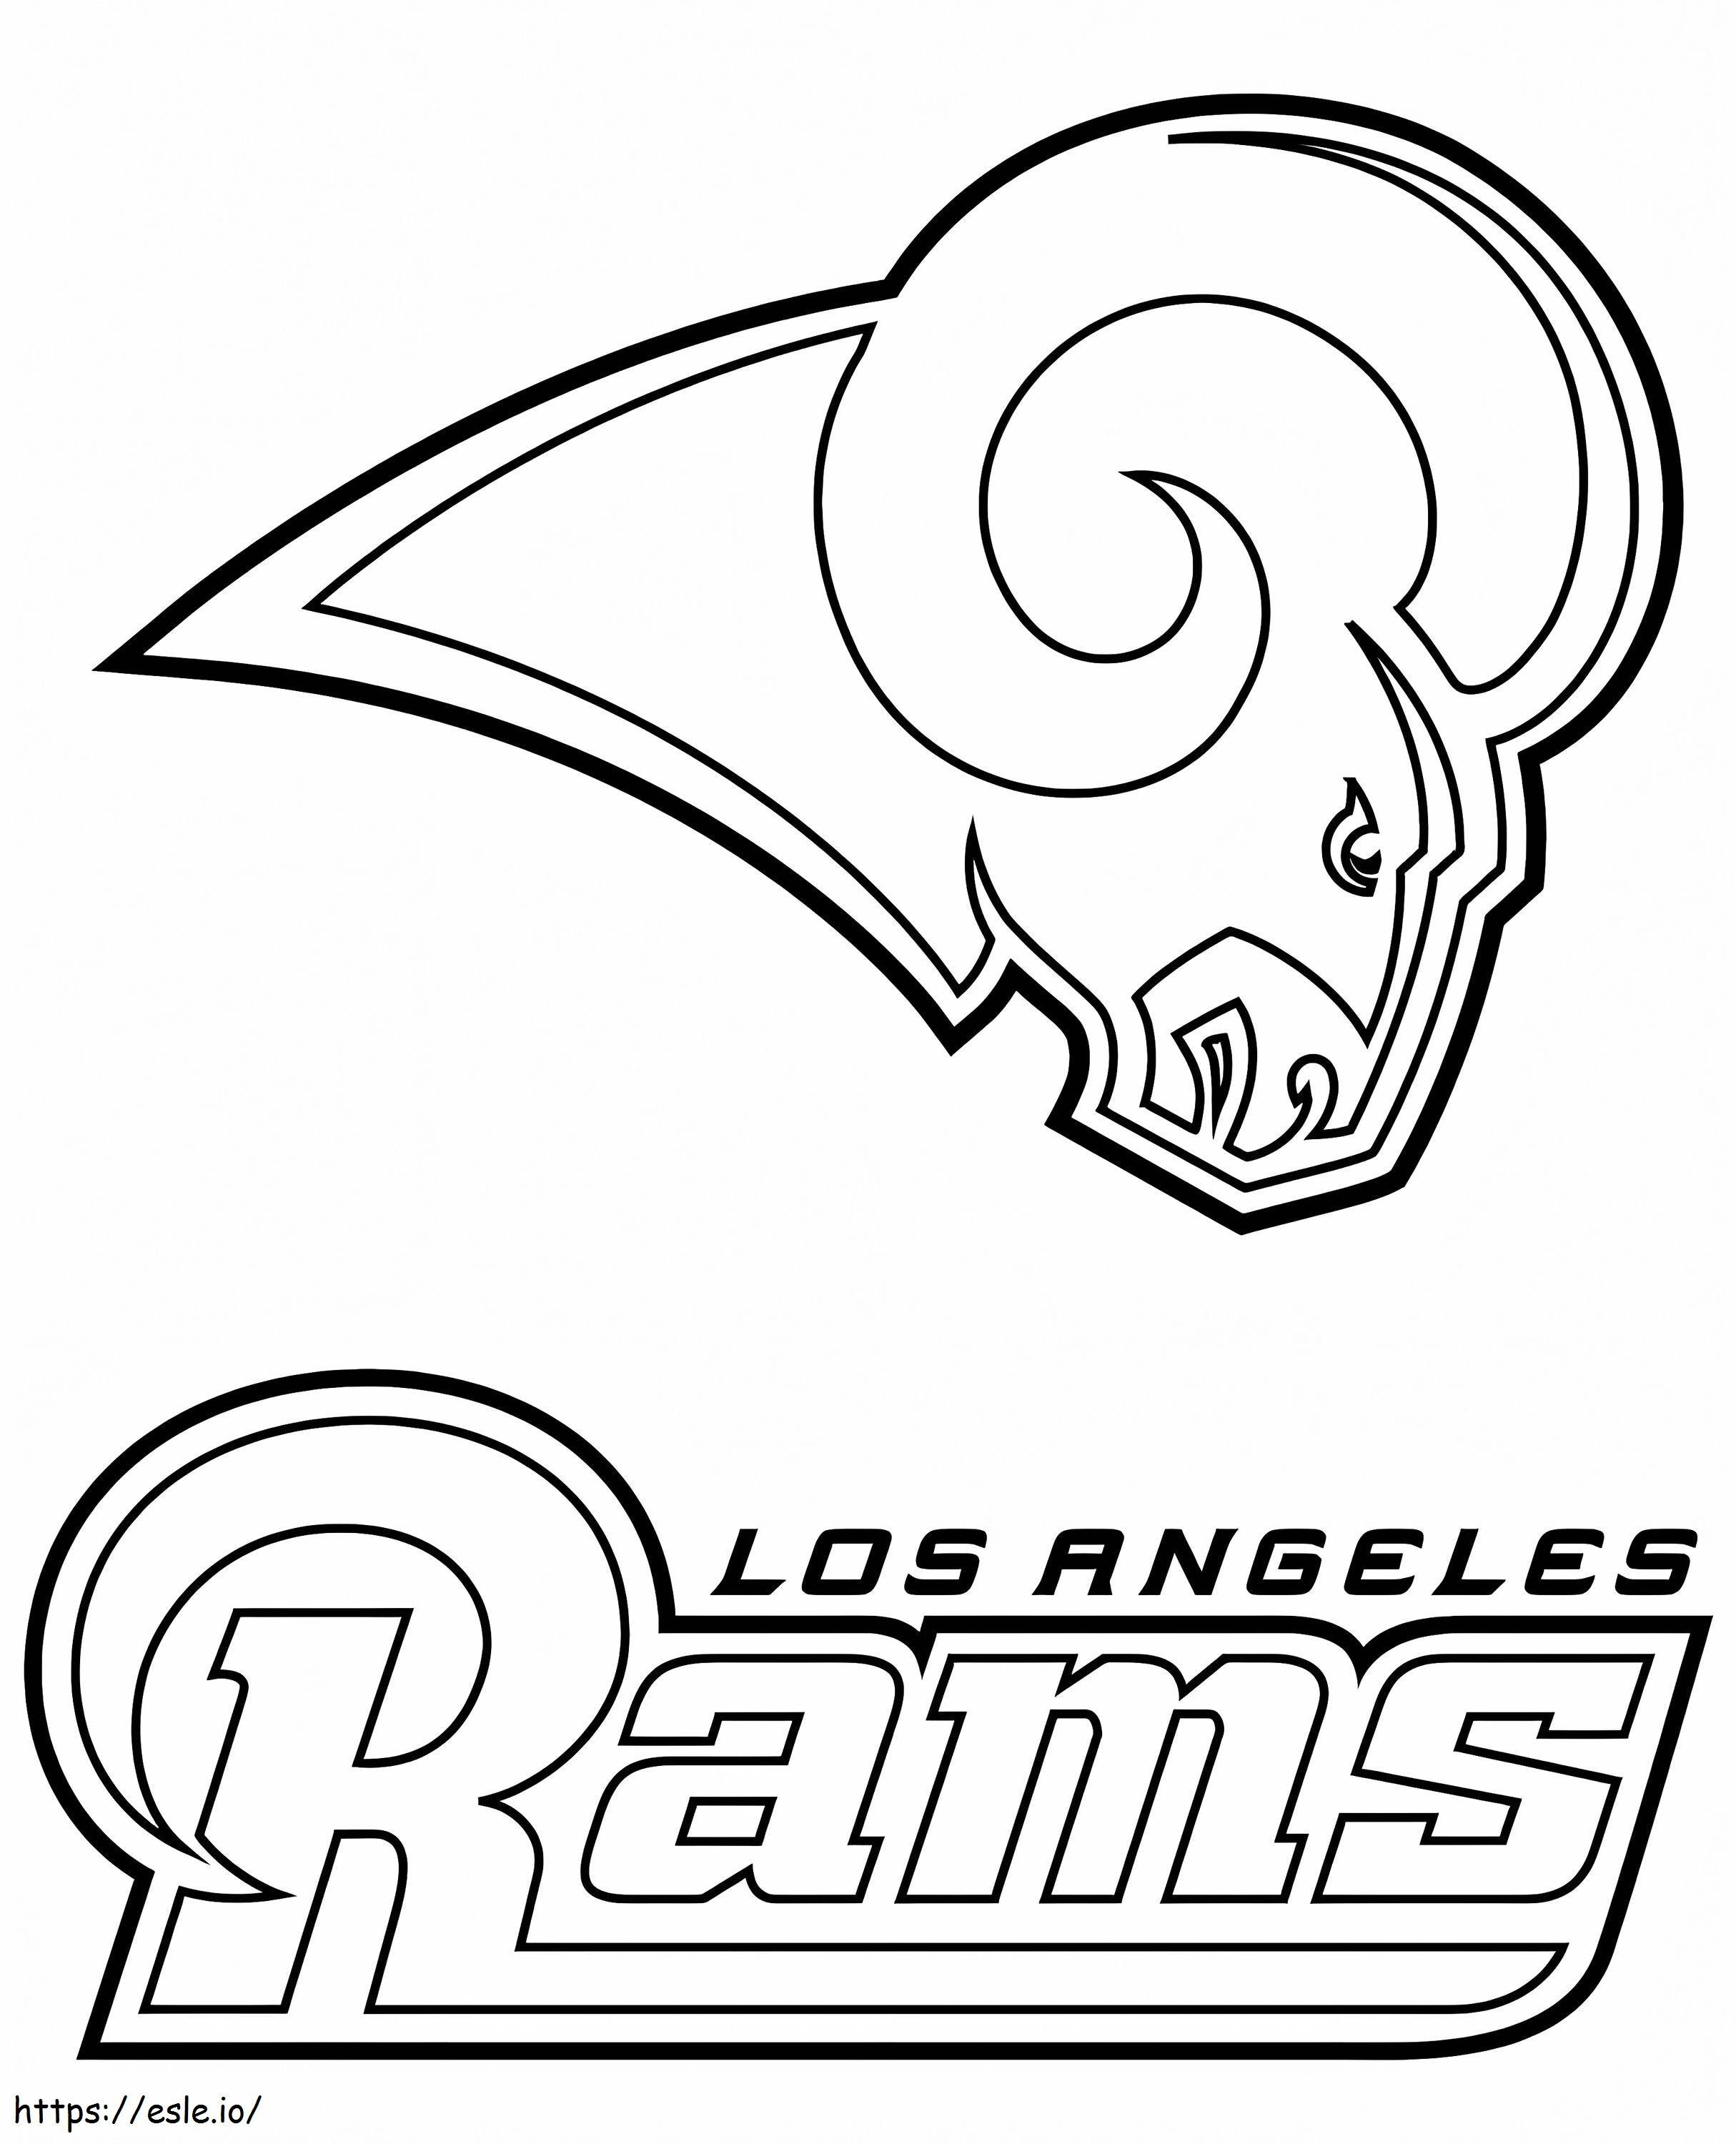 Los Angeles Rams-logo kleurplaat kleurplaat